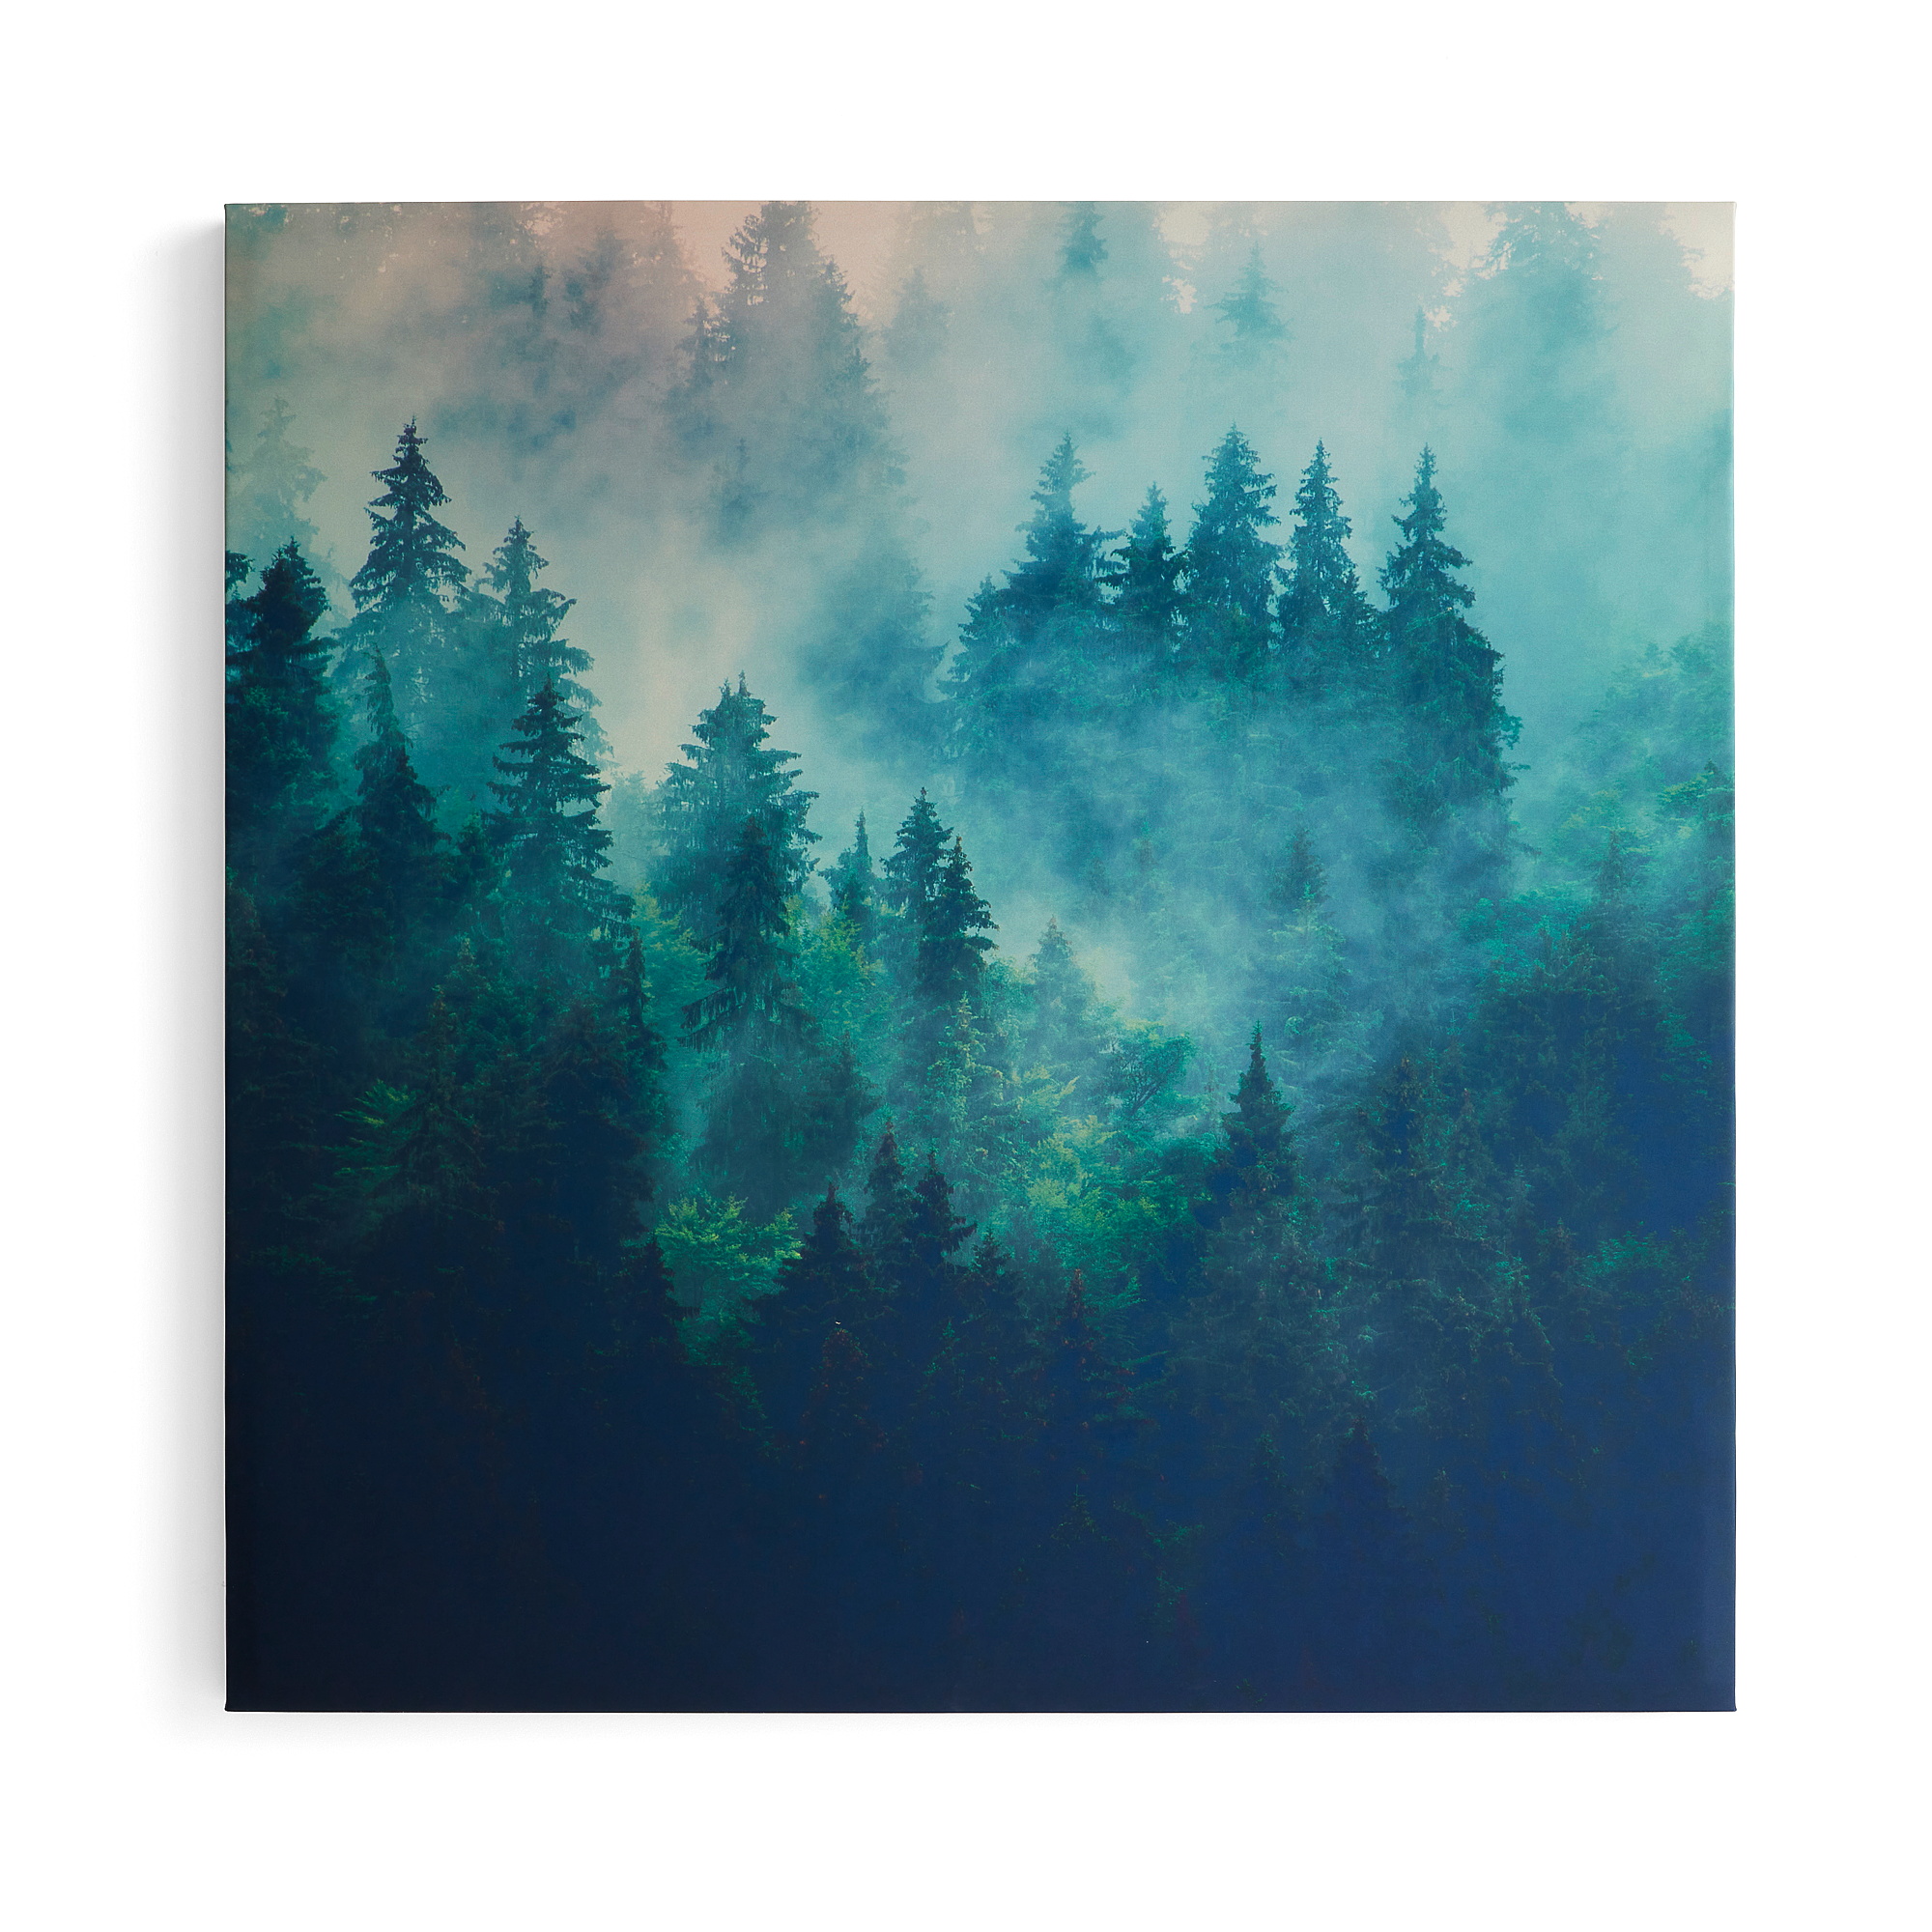 Akustický panel IMAGE, ranní mlha, část 1, 1200x1200 mm